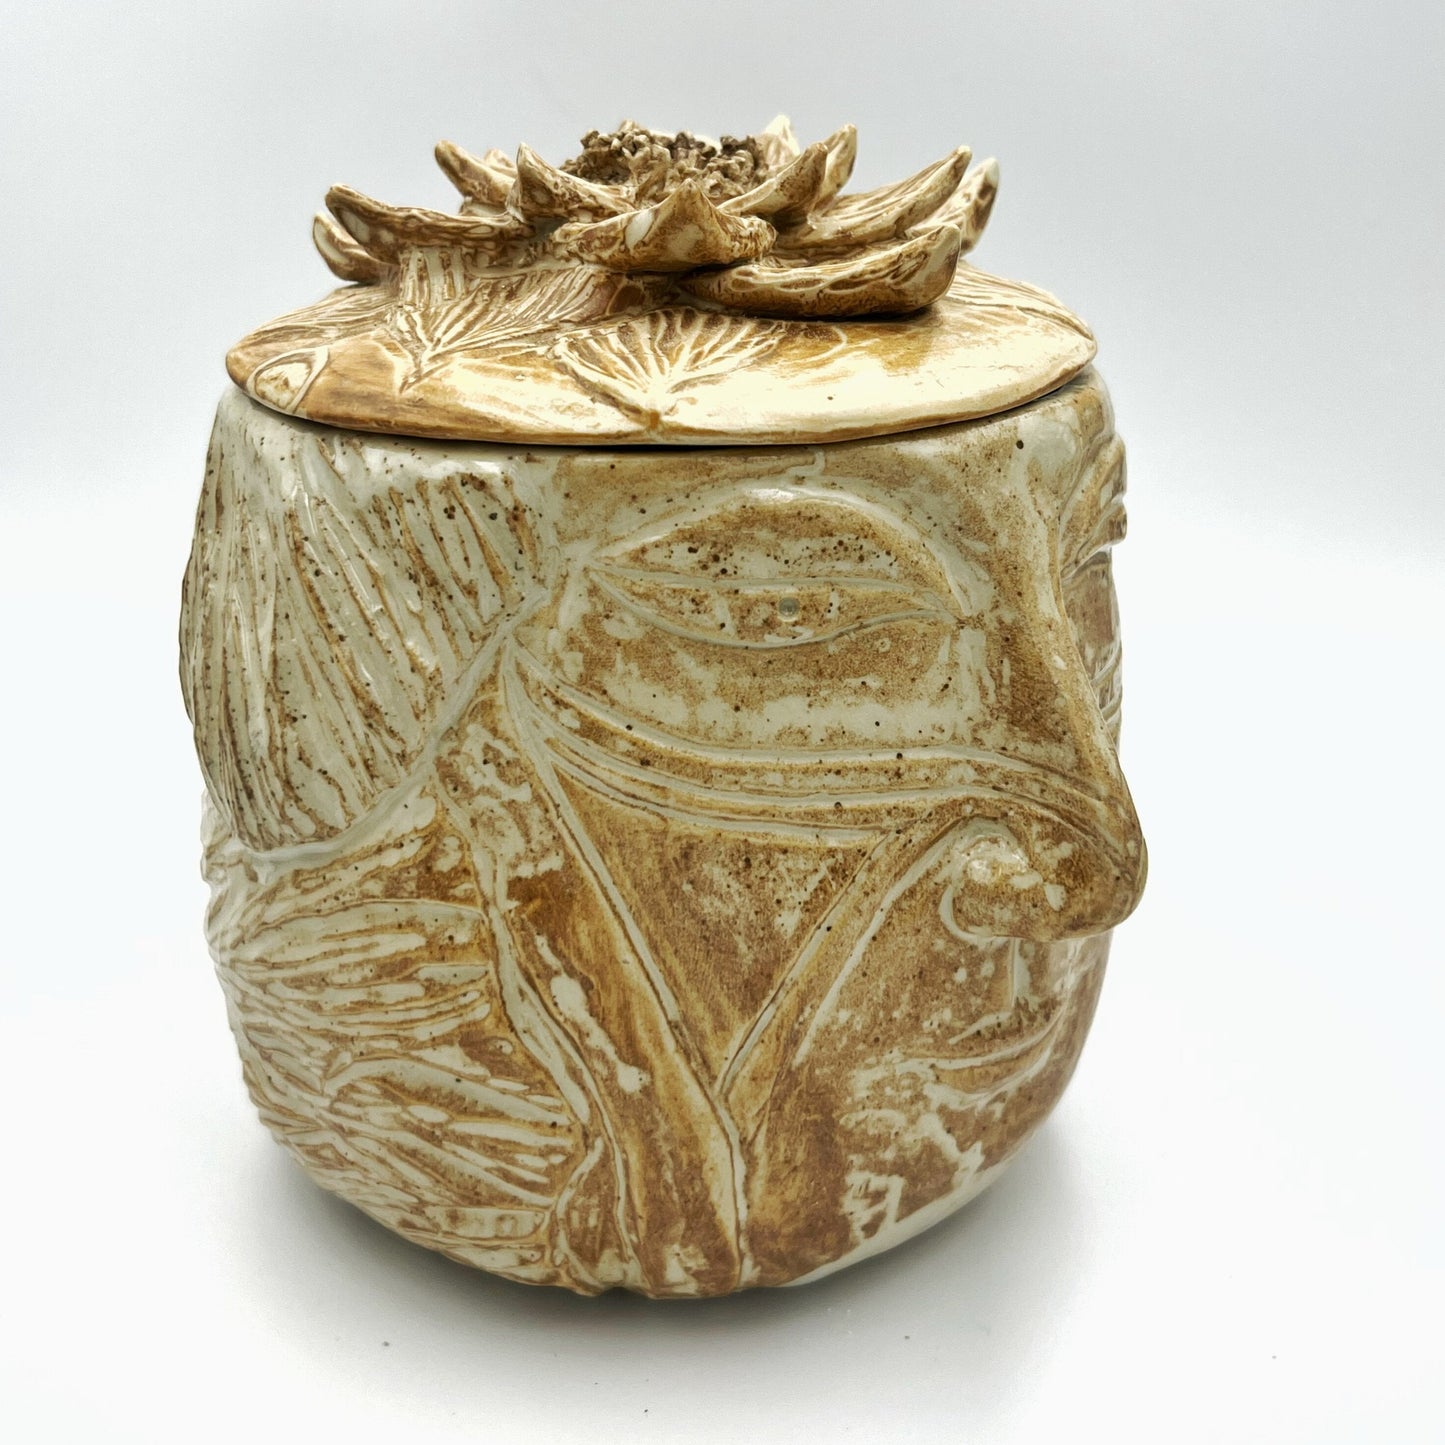 Shaman face ceramic jar